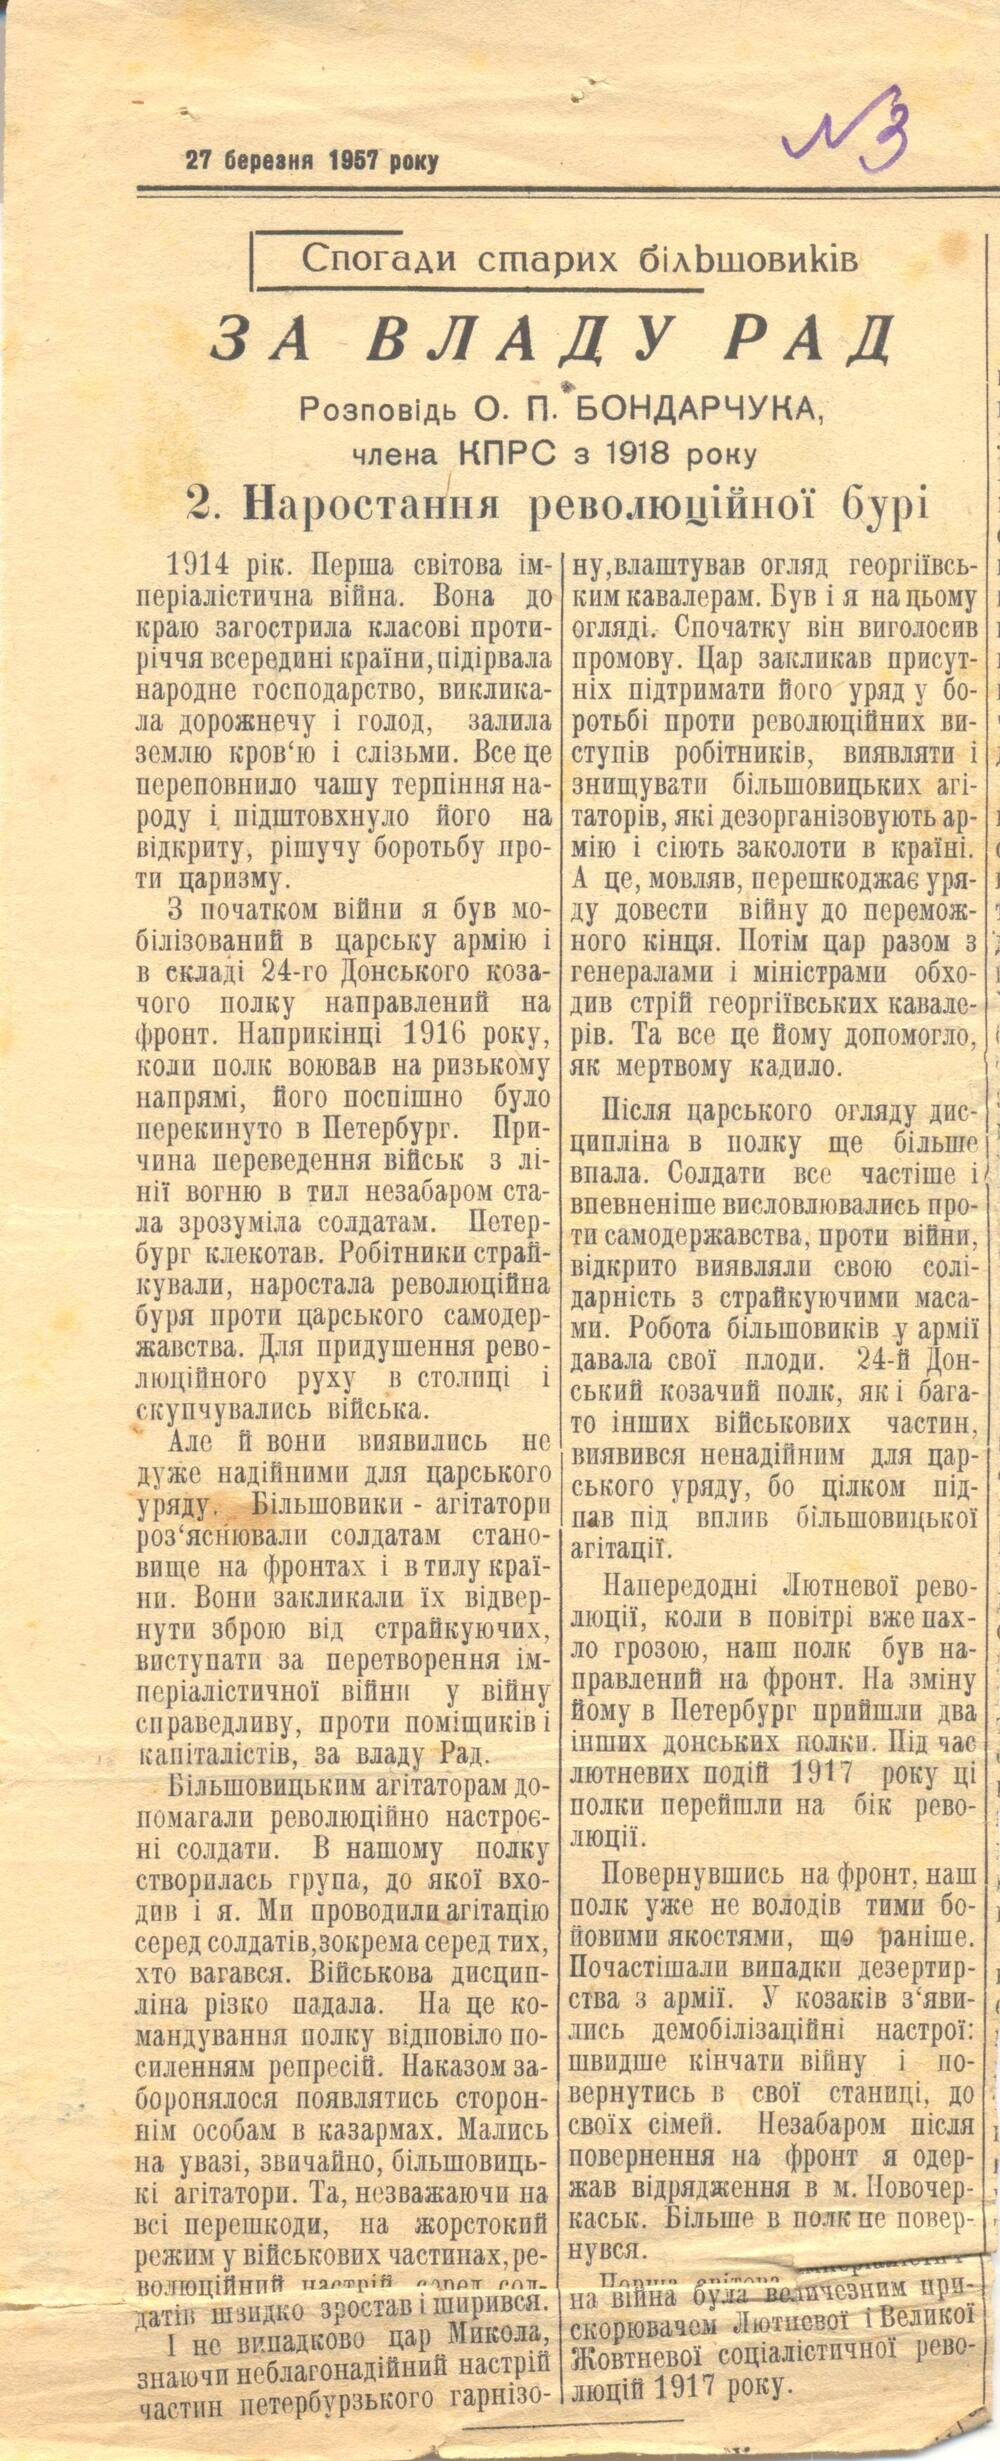 Газета. Радянське село от 27 березня 1957 року - 27 марта 1957 г. (вырезка)